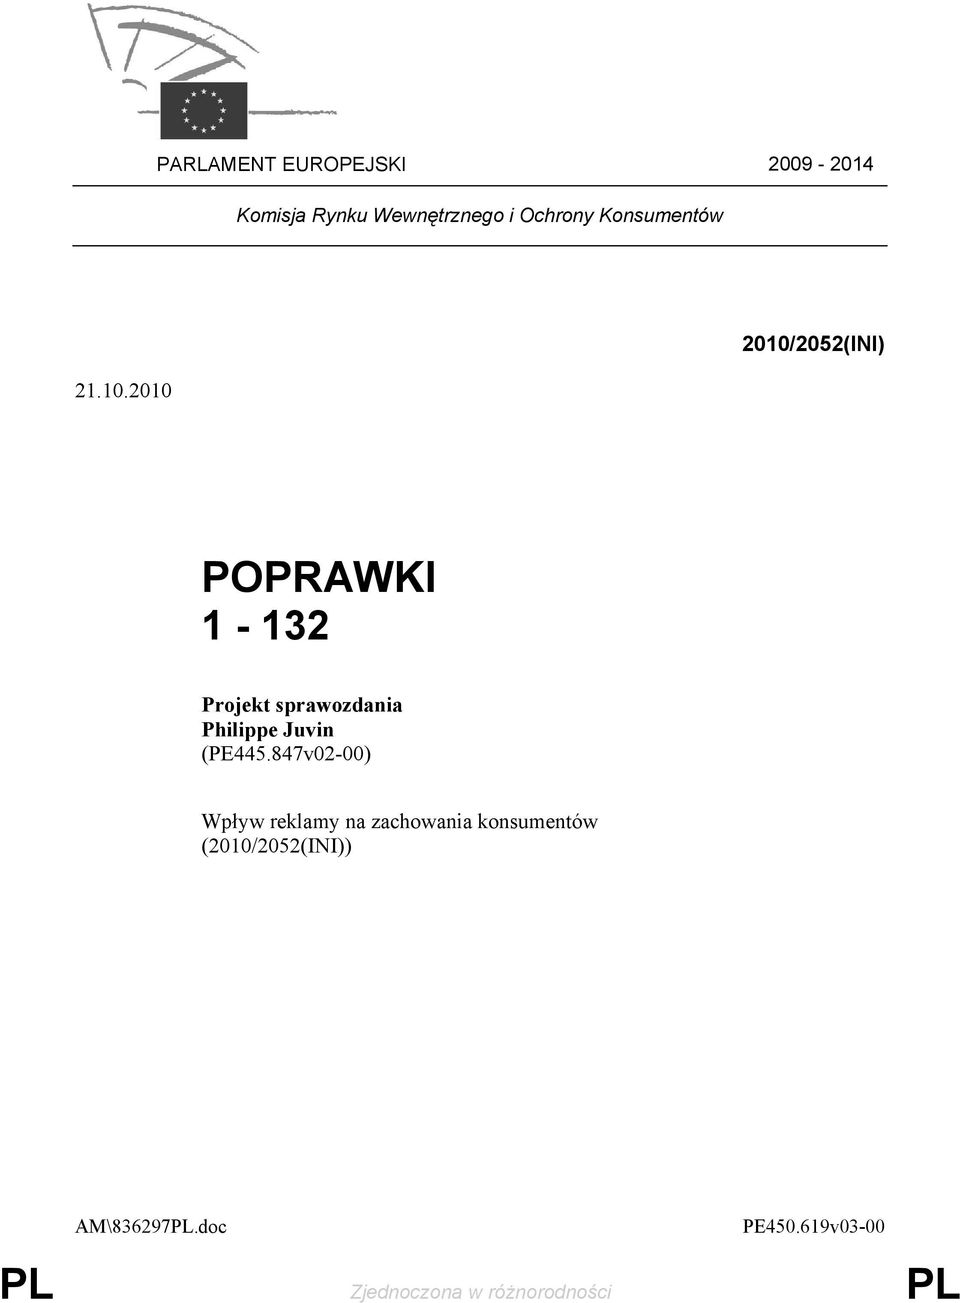 2010 2010/2052(INI) POPRAWKI 1-132 Projekt sprawozdania Philippe Juvin